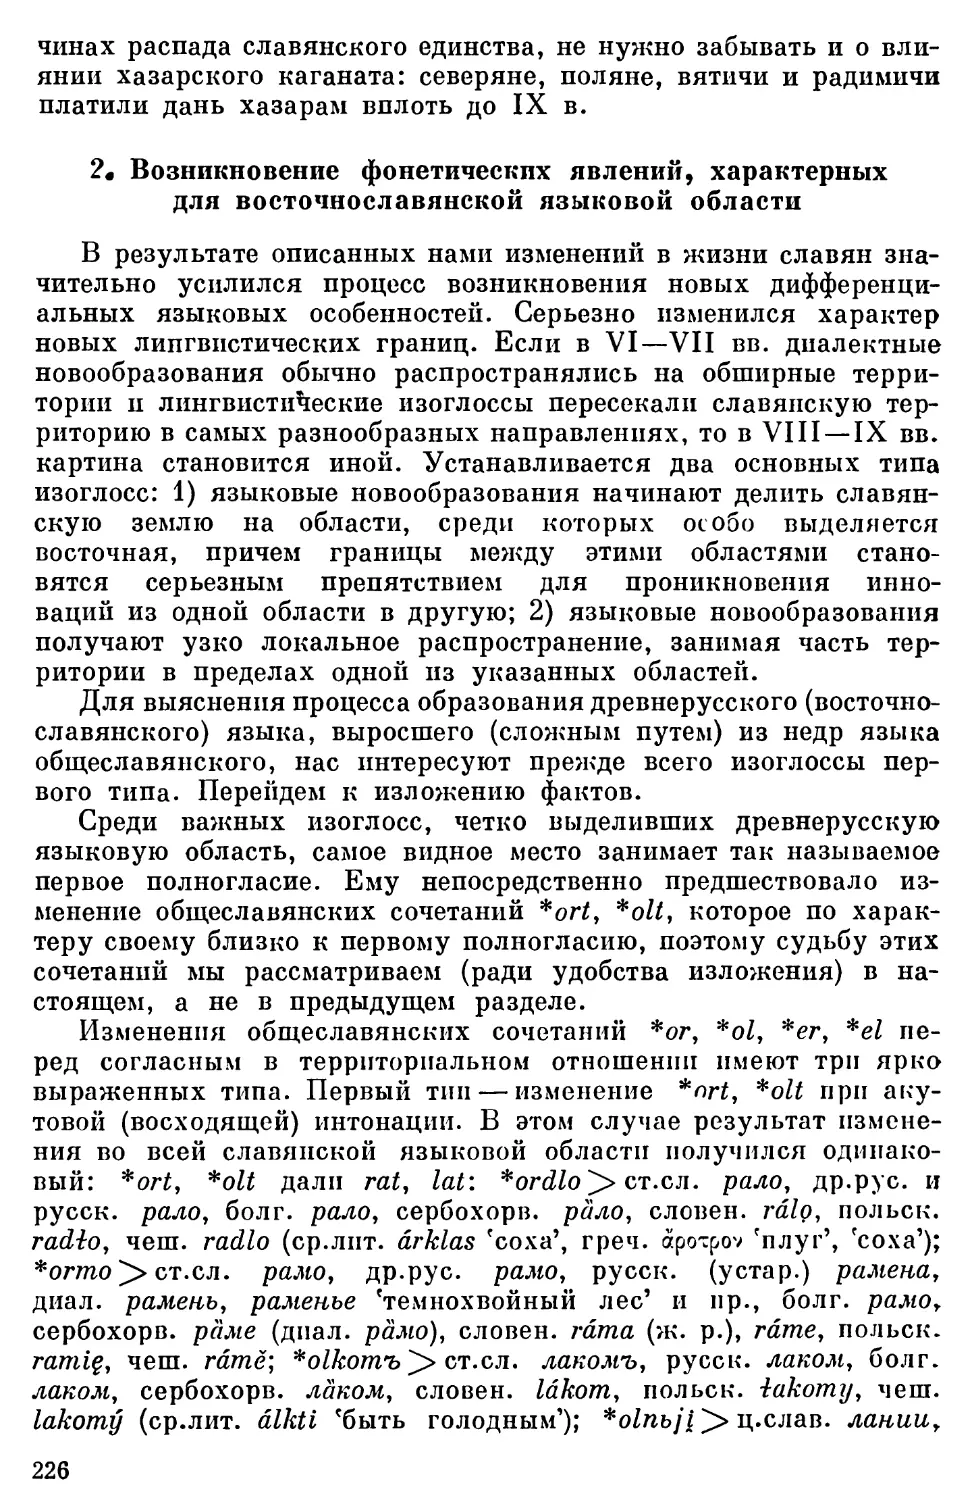 2. Возникновение фонетических явлений, характерных для восточнославянской языковой области